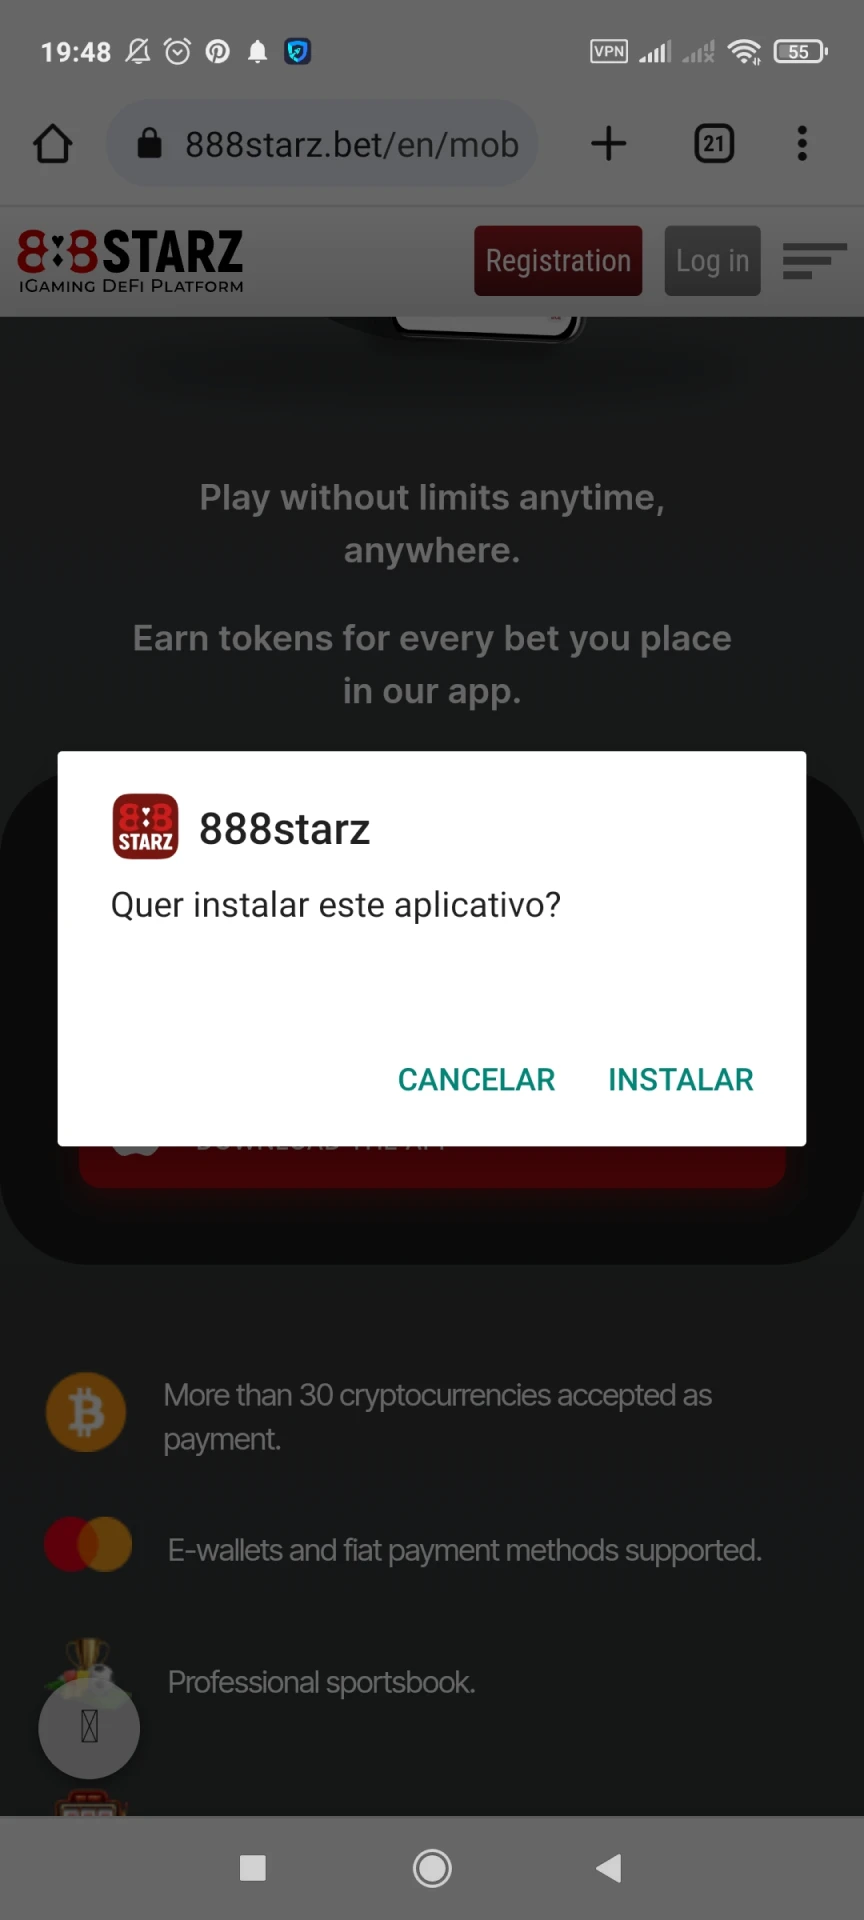 Prossiga com a instalação do aplicativo 888starz para Android.